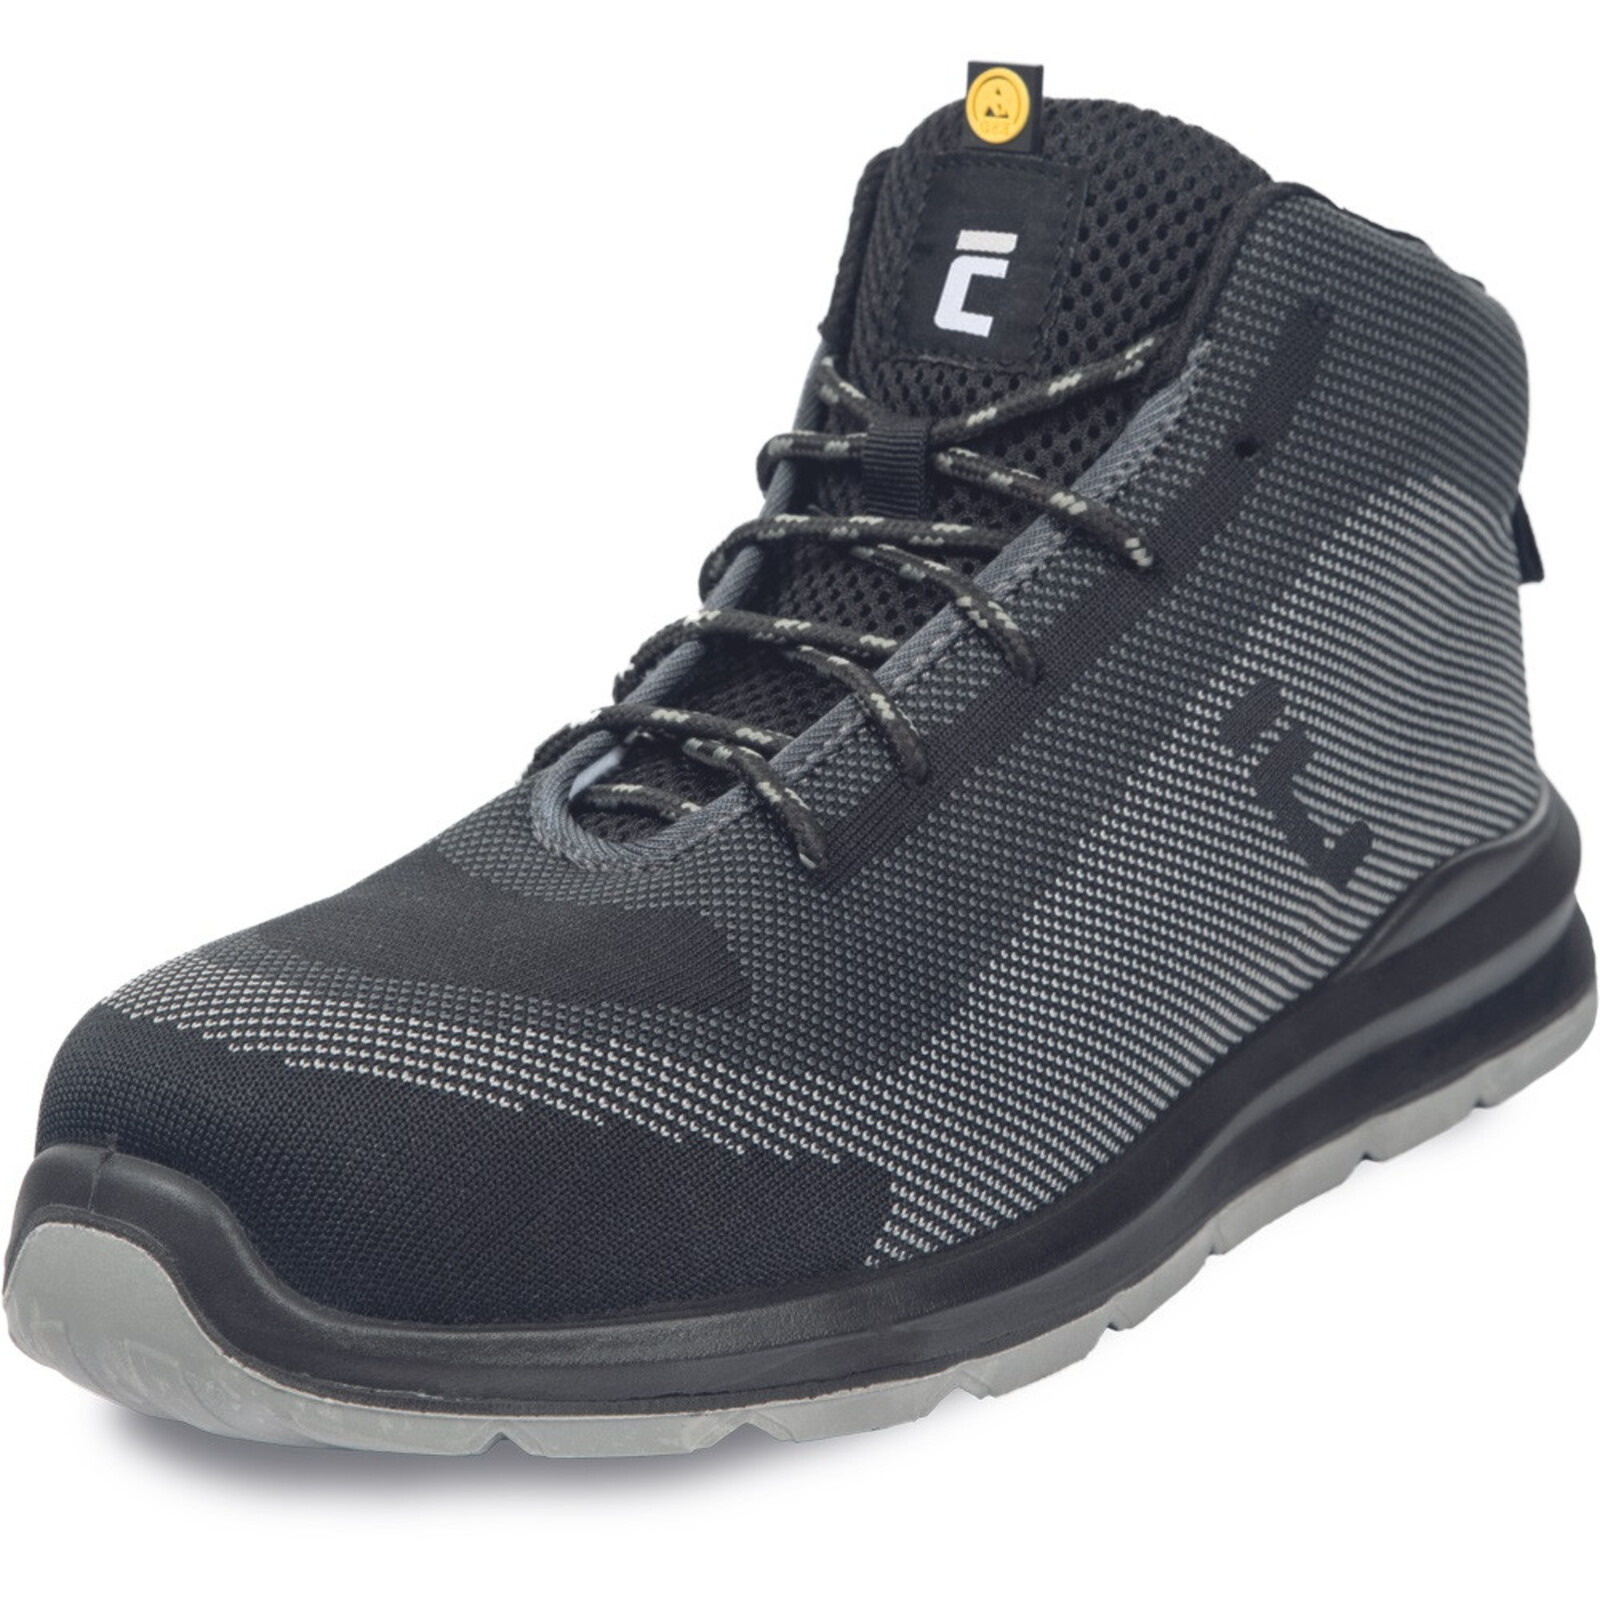 Bezpečnostná členková obuv Cerva Vadorros S1P MF ESD SRC - veľkosť: 47, farba: sivá/čierna